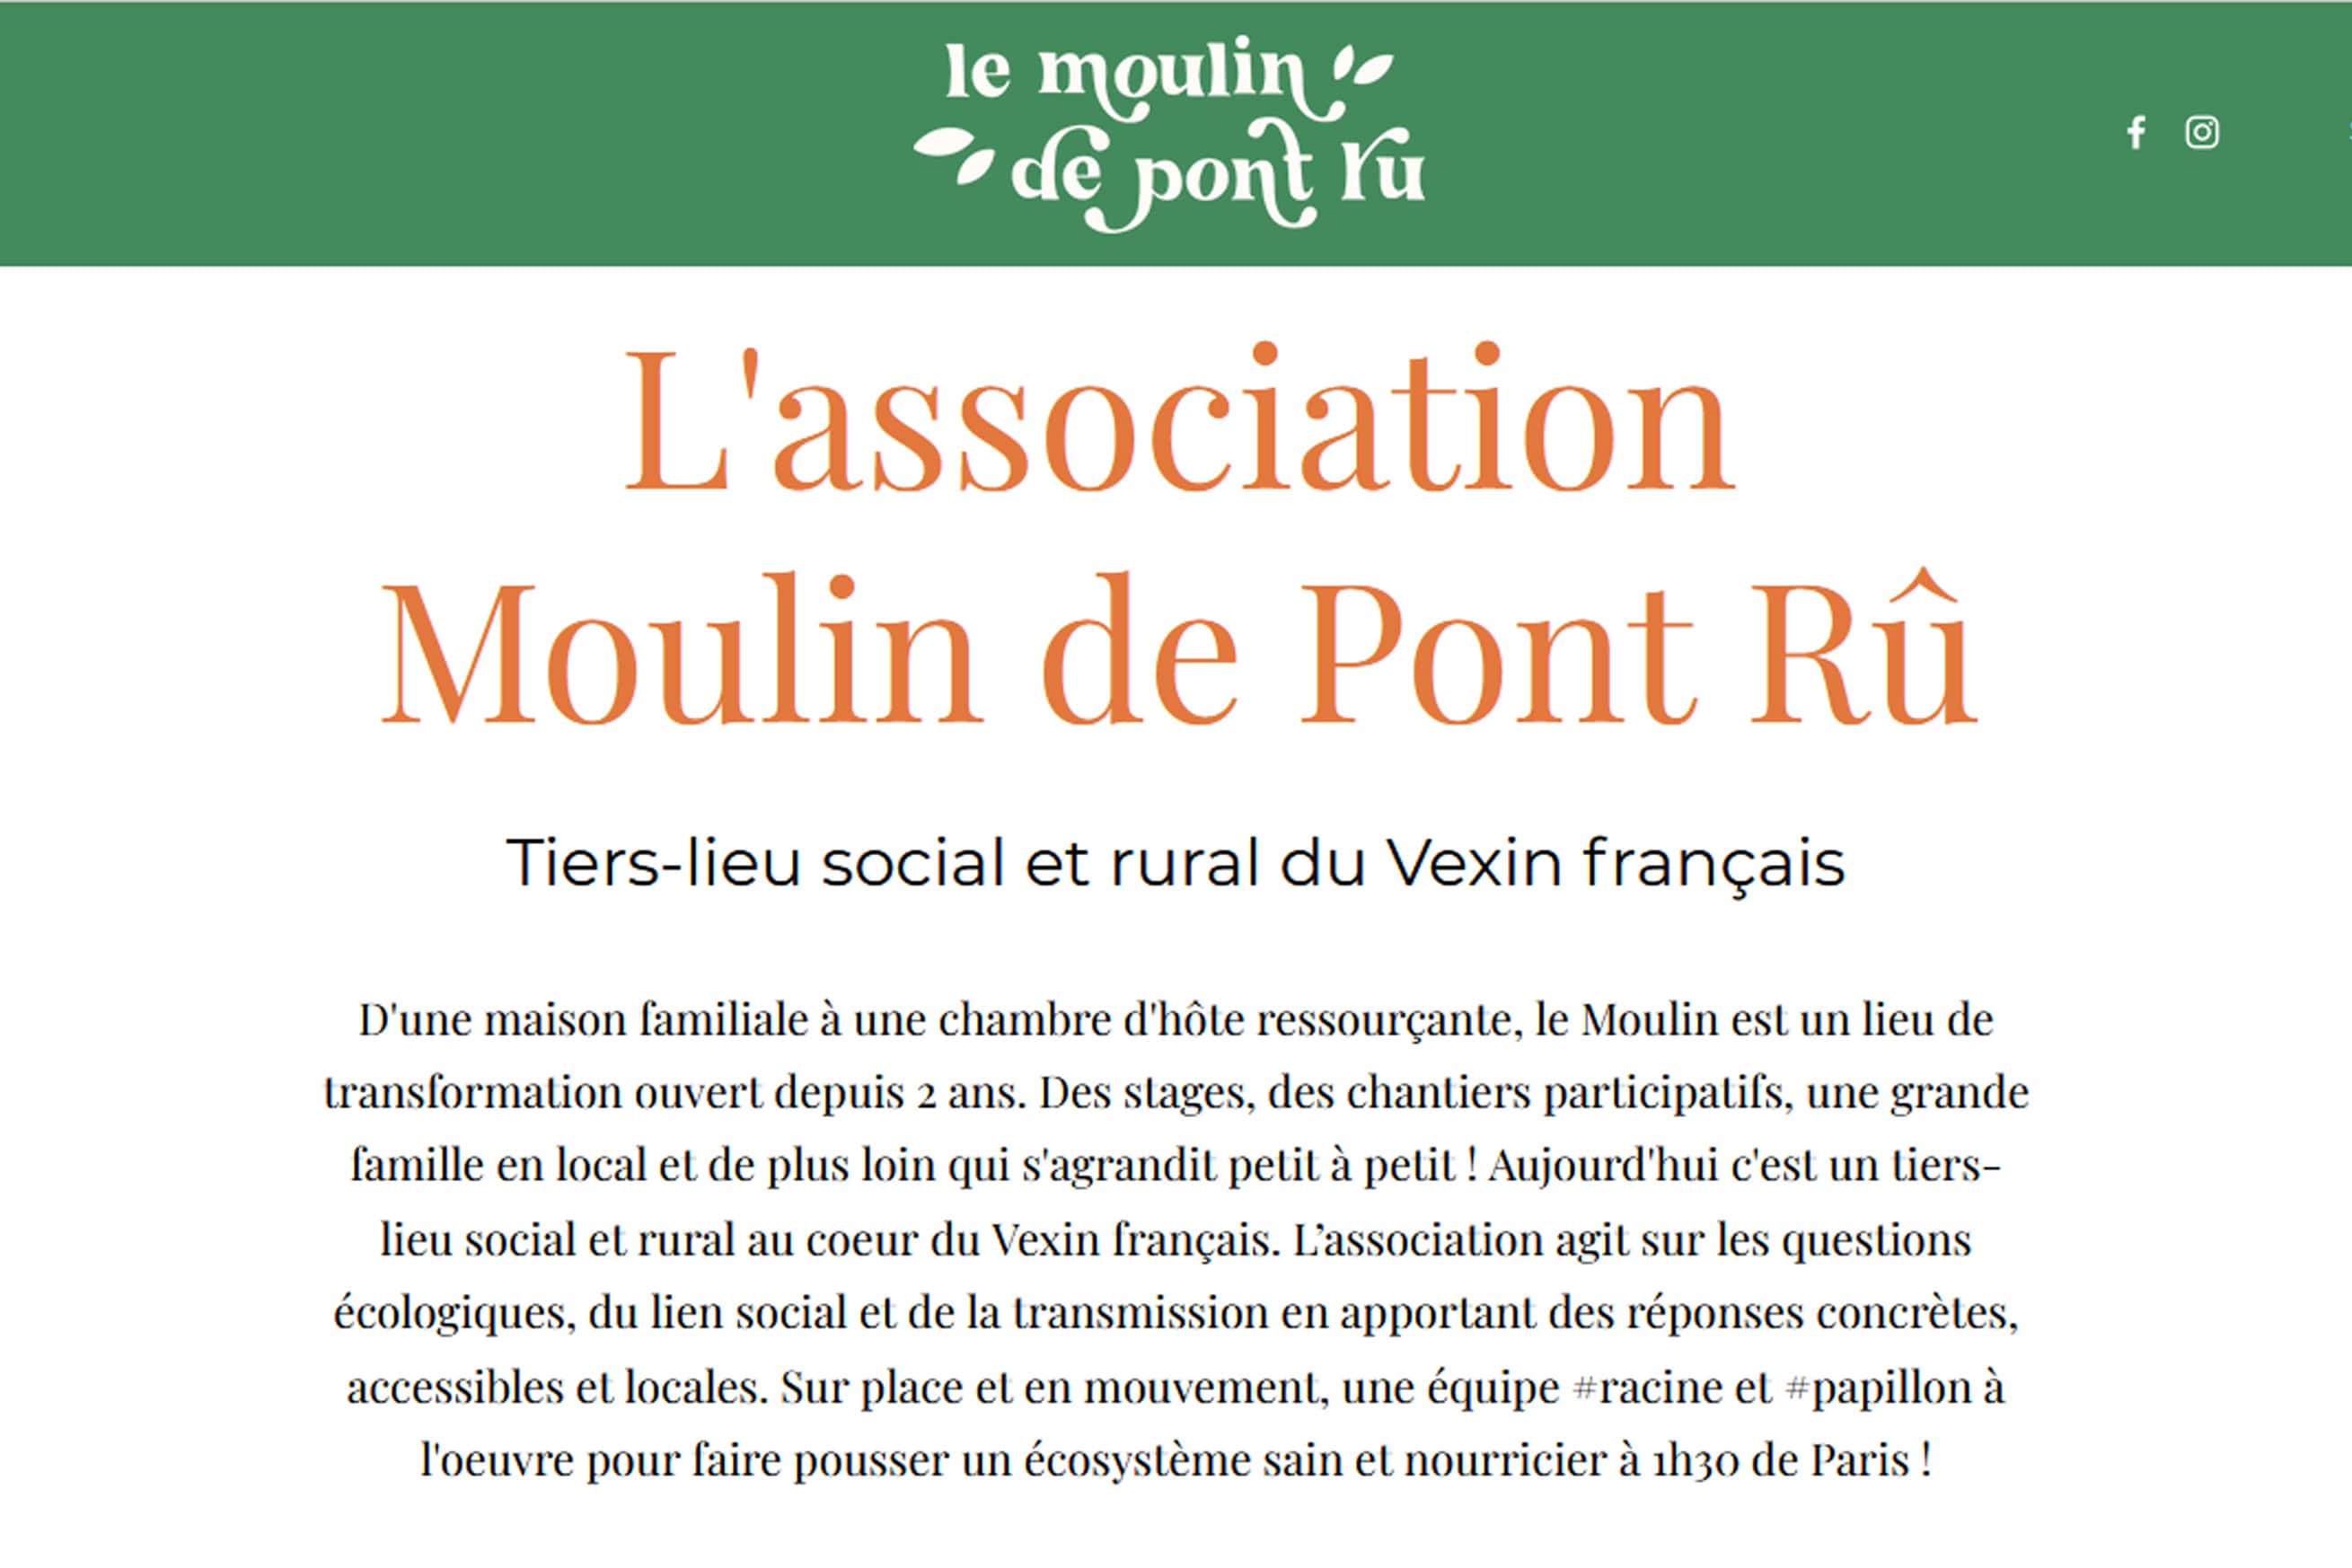 L'association Moulin de Pont Rû